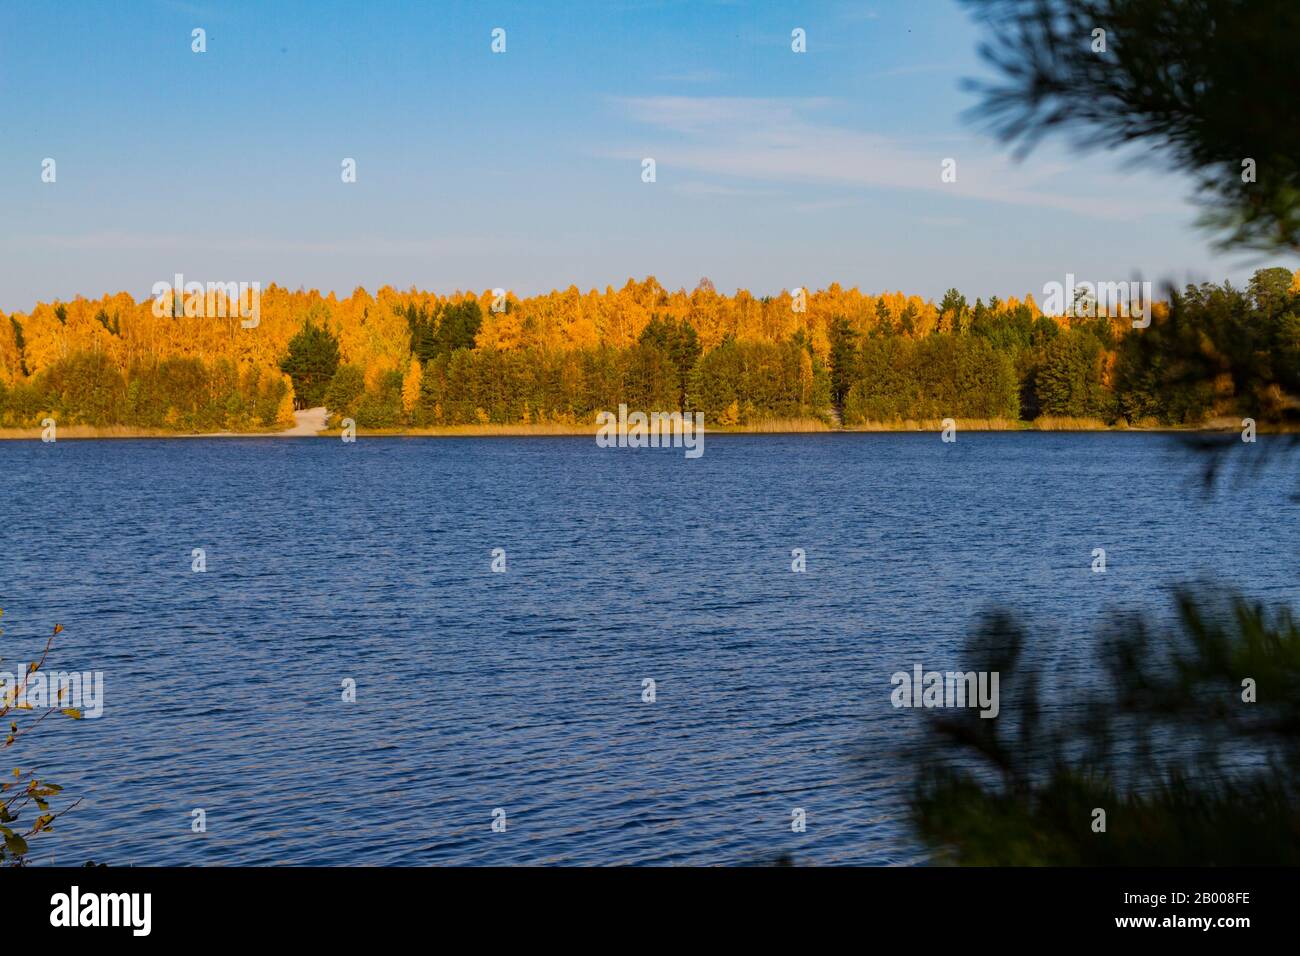 Goldener Herbstwald am Ufer des Sees. Reflexion im Wasser. Stockfoto